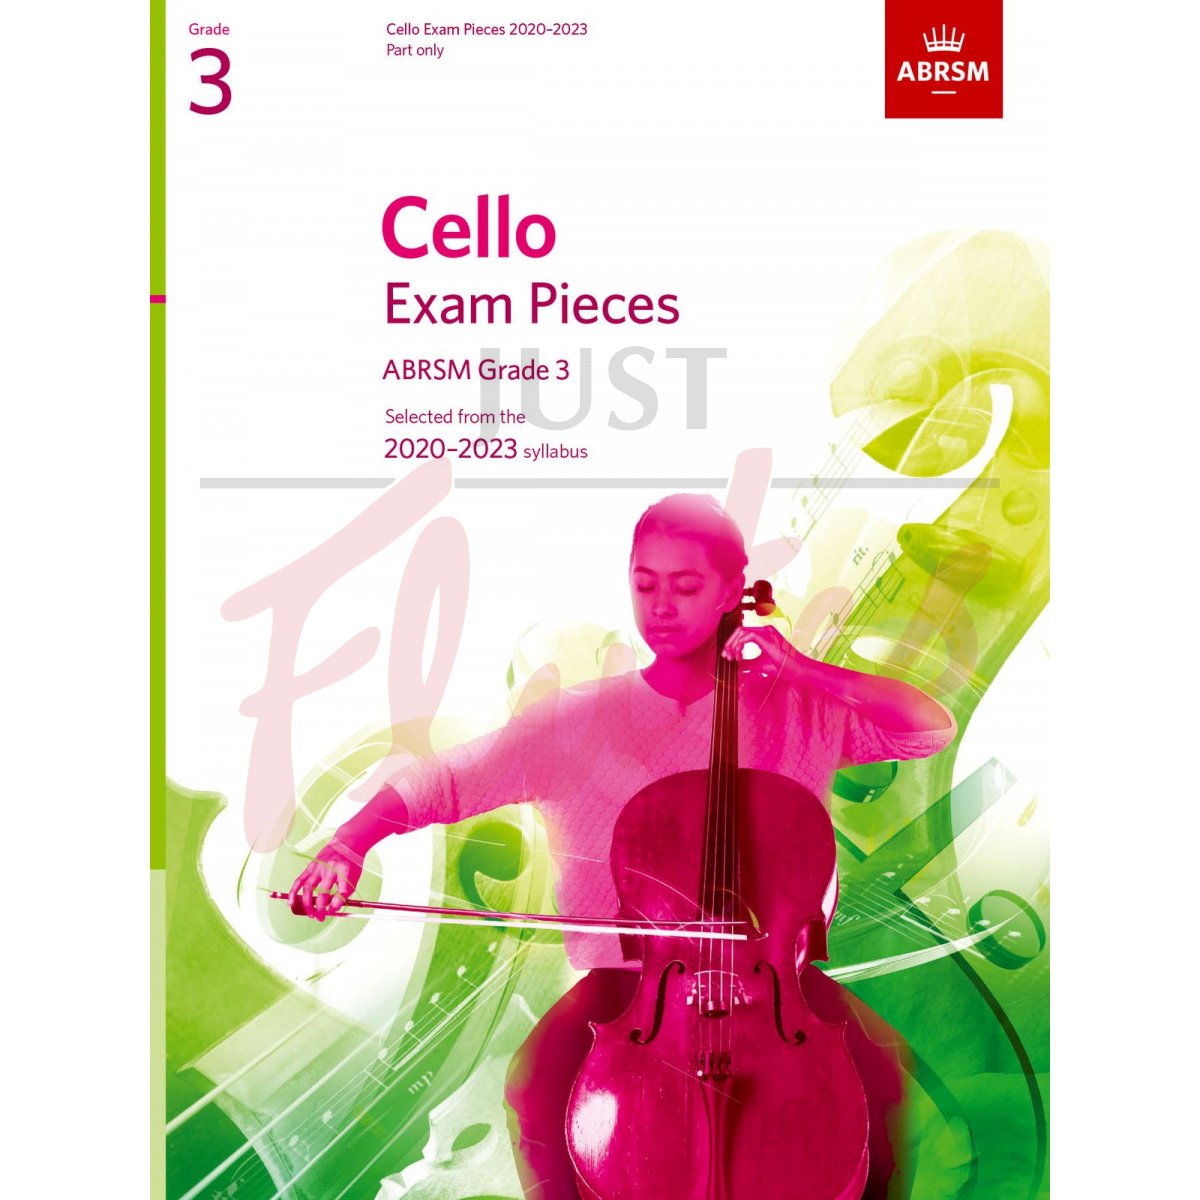 Cello Exam Pieces 2020-2023, Grade 3 [Part Only]